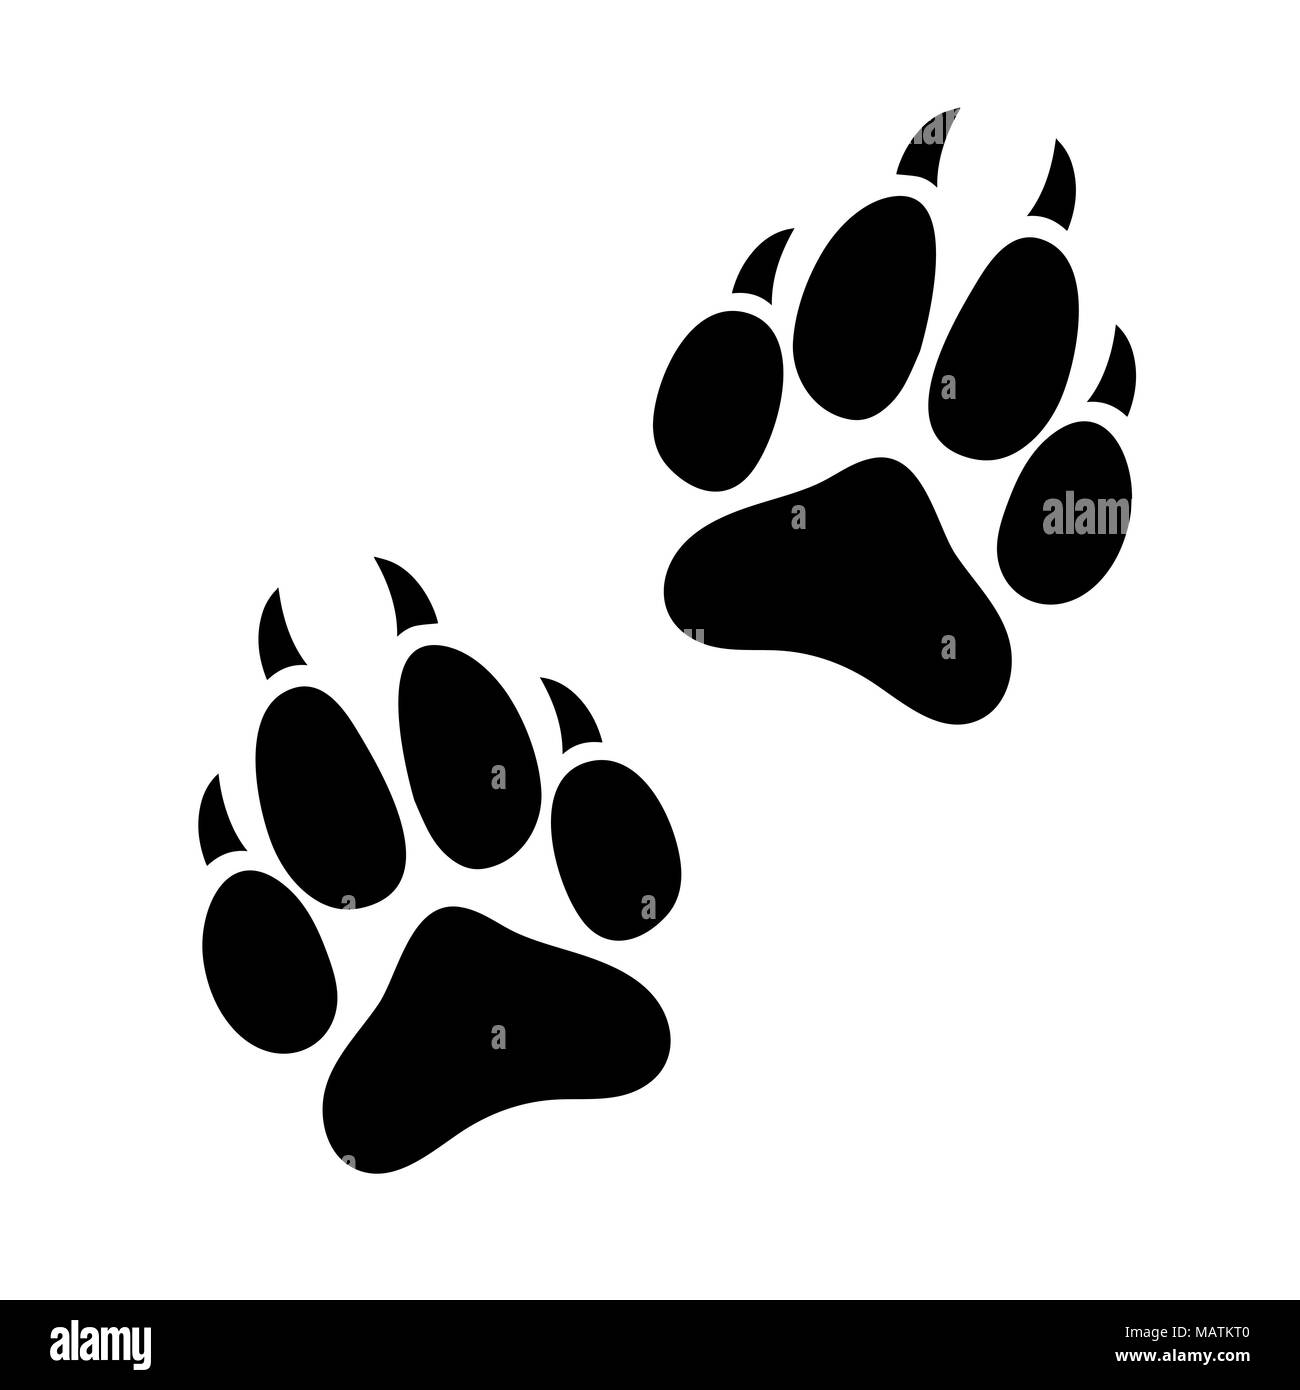 Paw print animal chien ou chat griffé, empreintes de silhouette d'un animal, icône, logo, traces noires isolé sur fond blanc Illustration de Vecteur